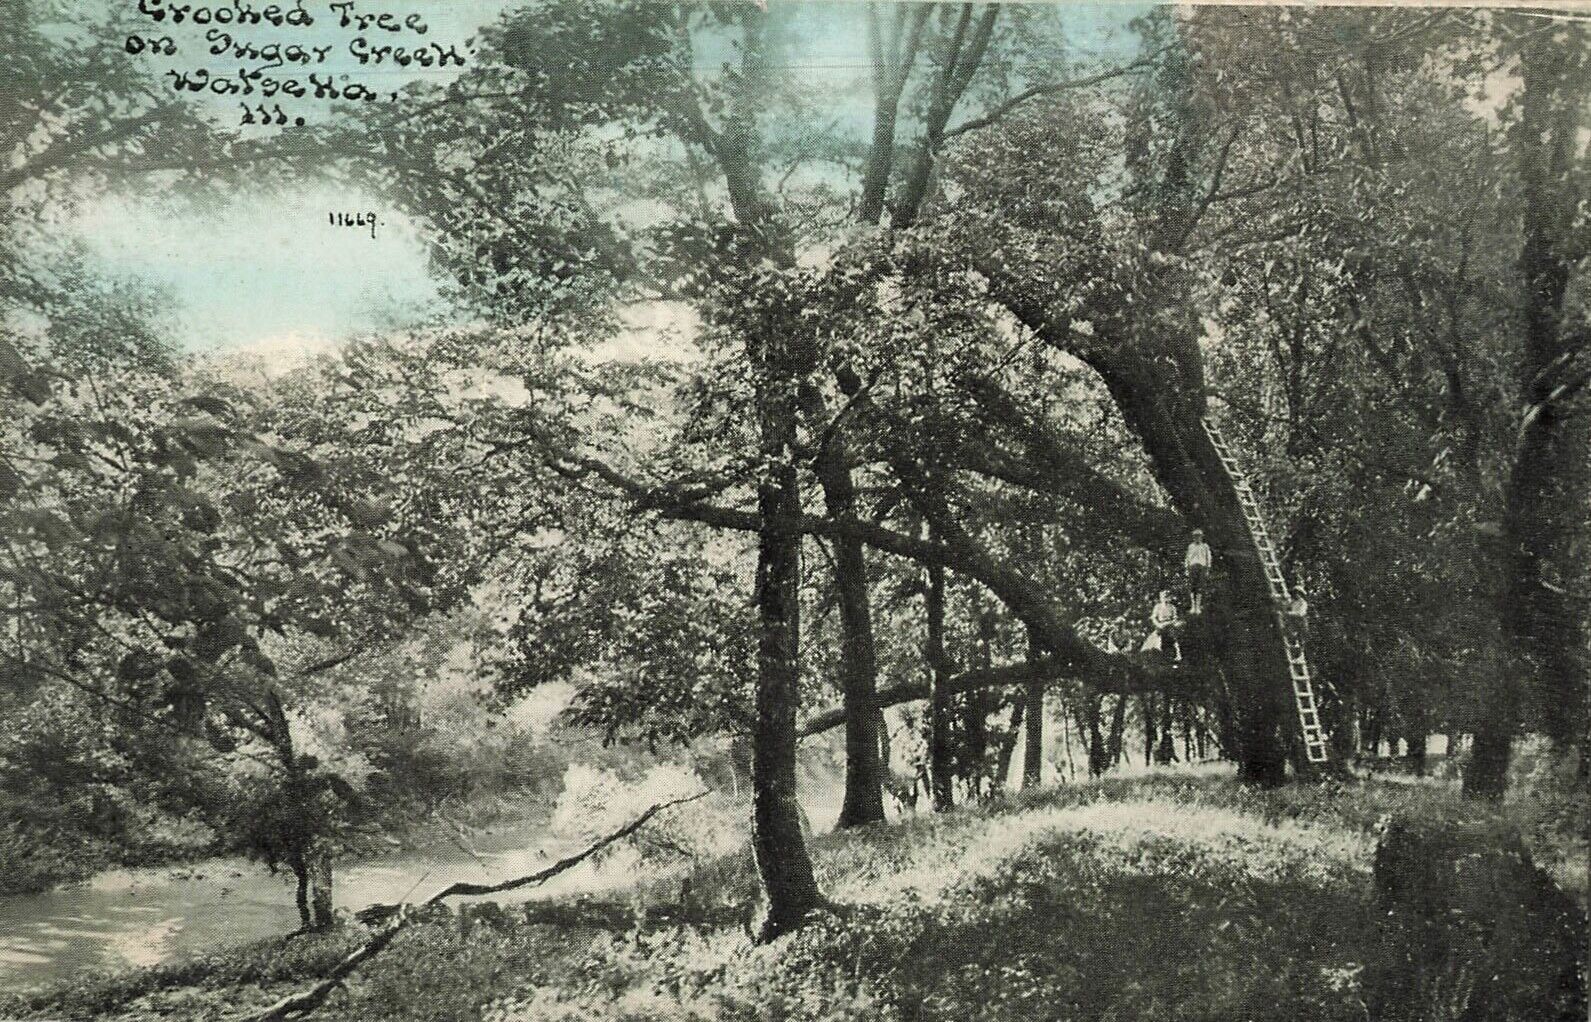 Crooked Tree Sugar Creek Watseka Illinois IL c1910 Photoette Postcard